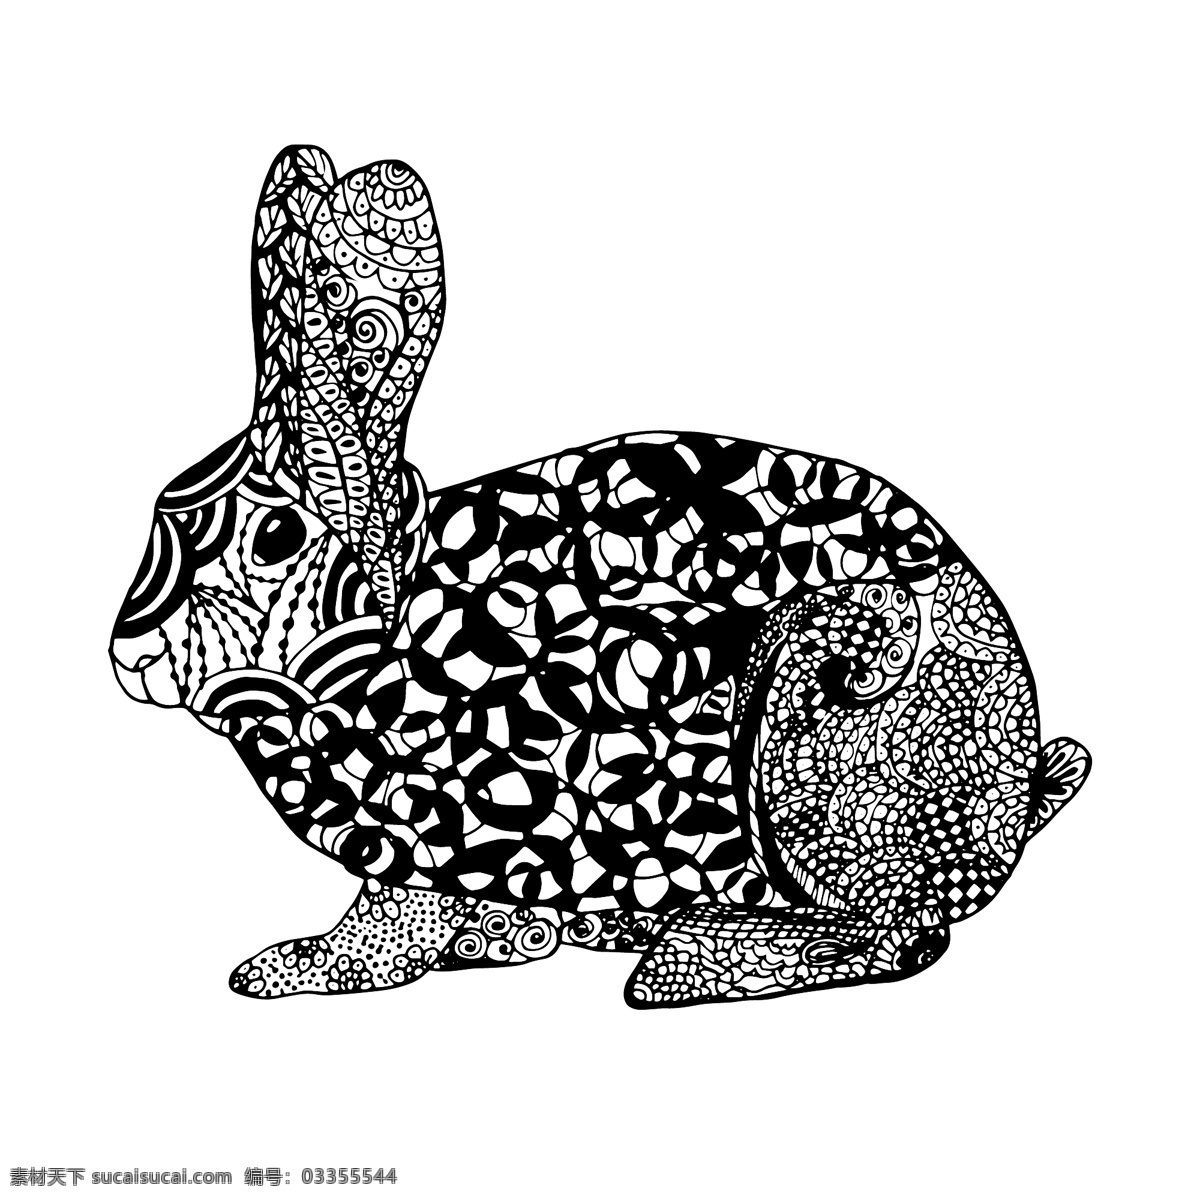 黑白 艺术 时尚 兔子 插画 图案 创意 动物